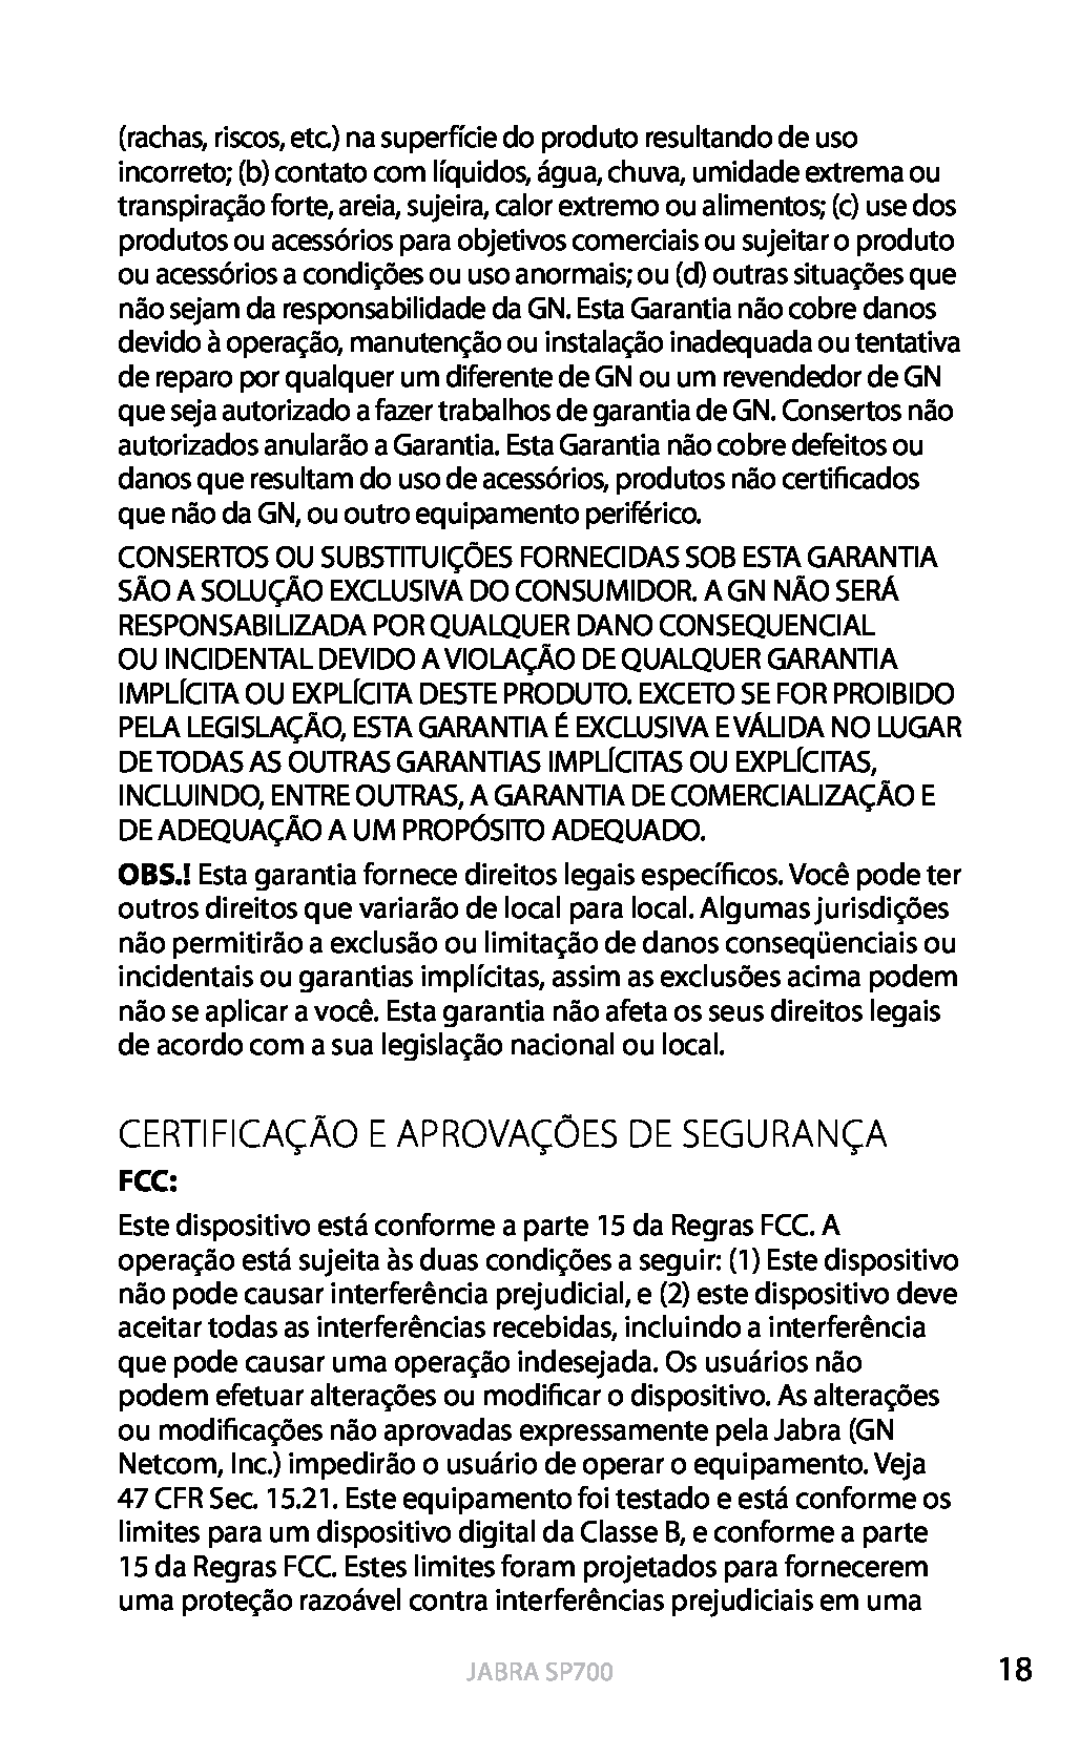 Jabra user manual Certificação E Aprovações De Segurança, Português, Jabra SP700 